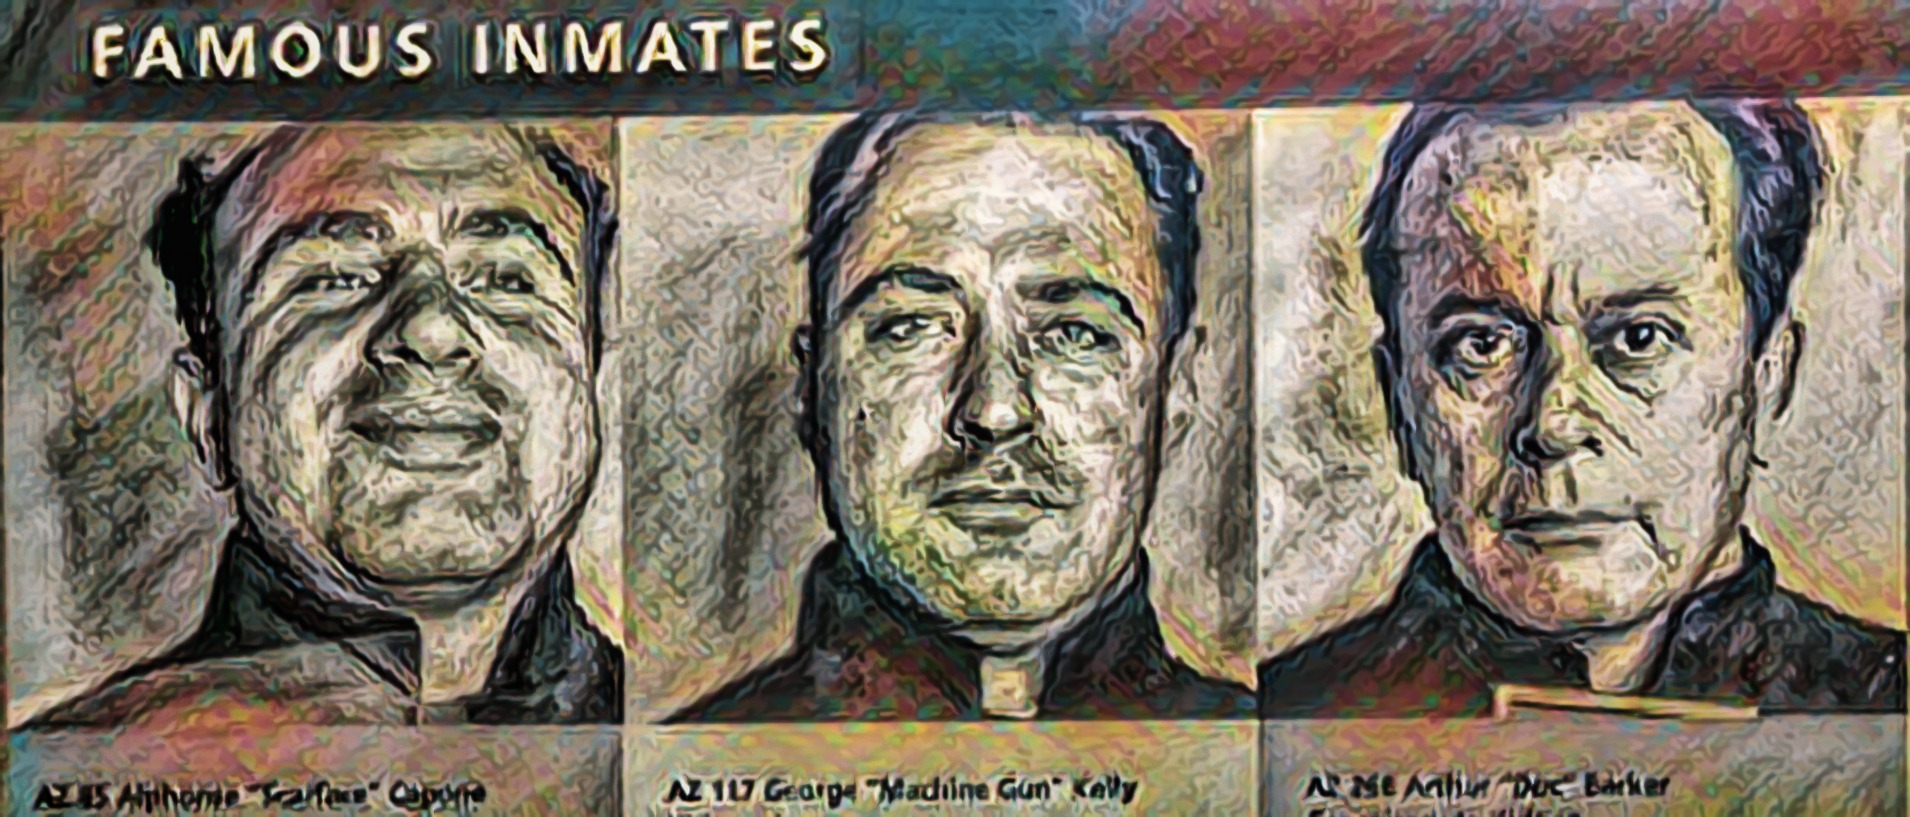 Famous Prisoners who were at Alcatraz in California